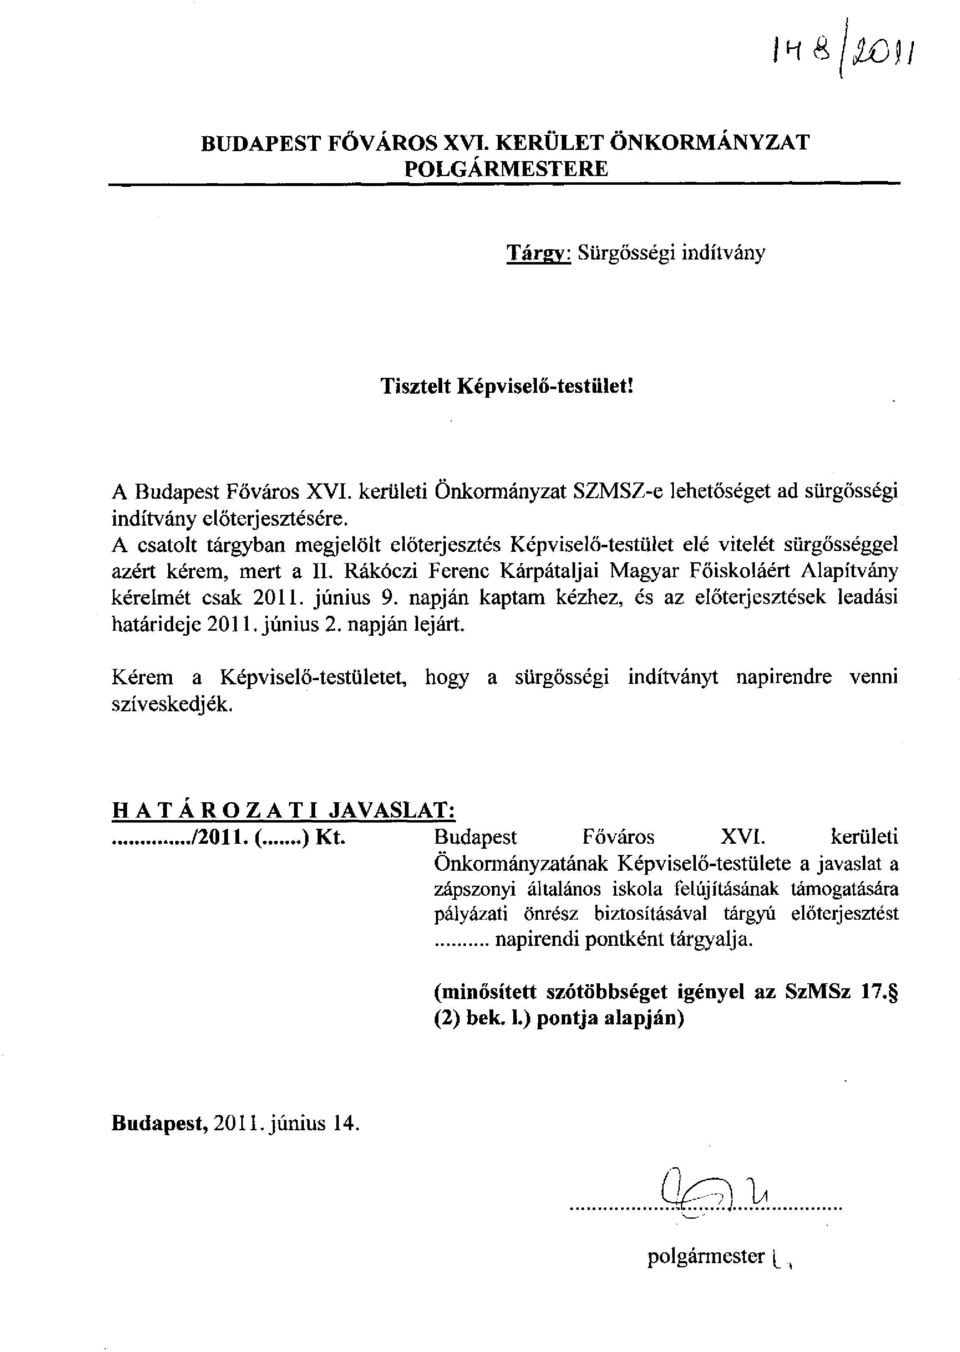 Rákóczi Ferenc Kárpátaljai Magyar Főiskoláért Alapítvány kérelmét csak 2011. június 9. napján kaptam kézhez, és az előterjesztések leadási határideje 2011. június 2. napján lejárt.